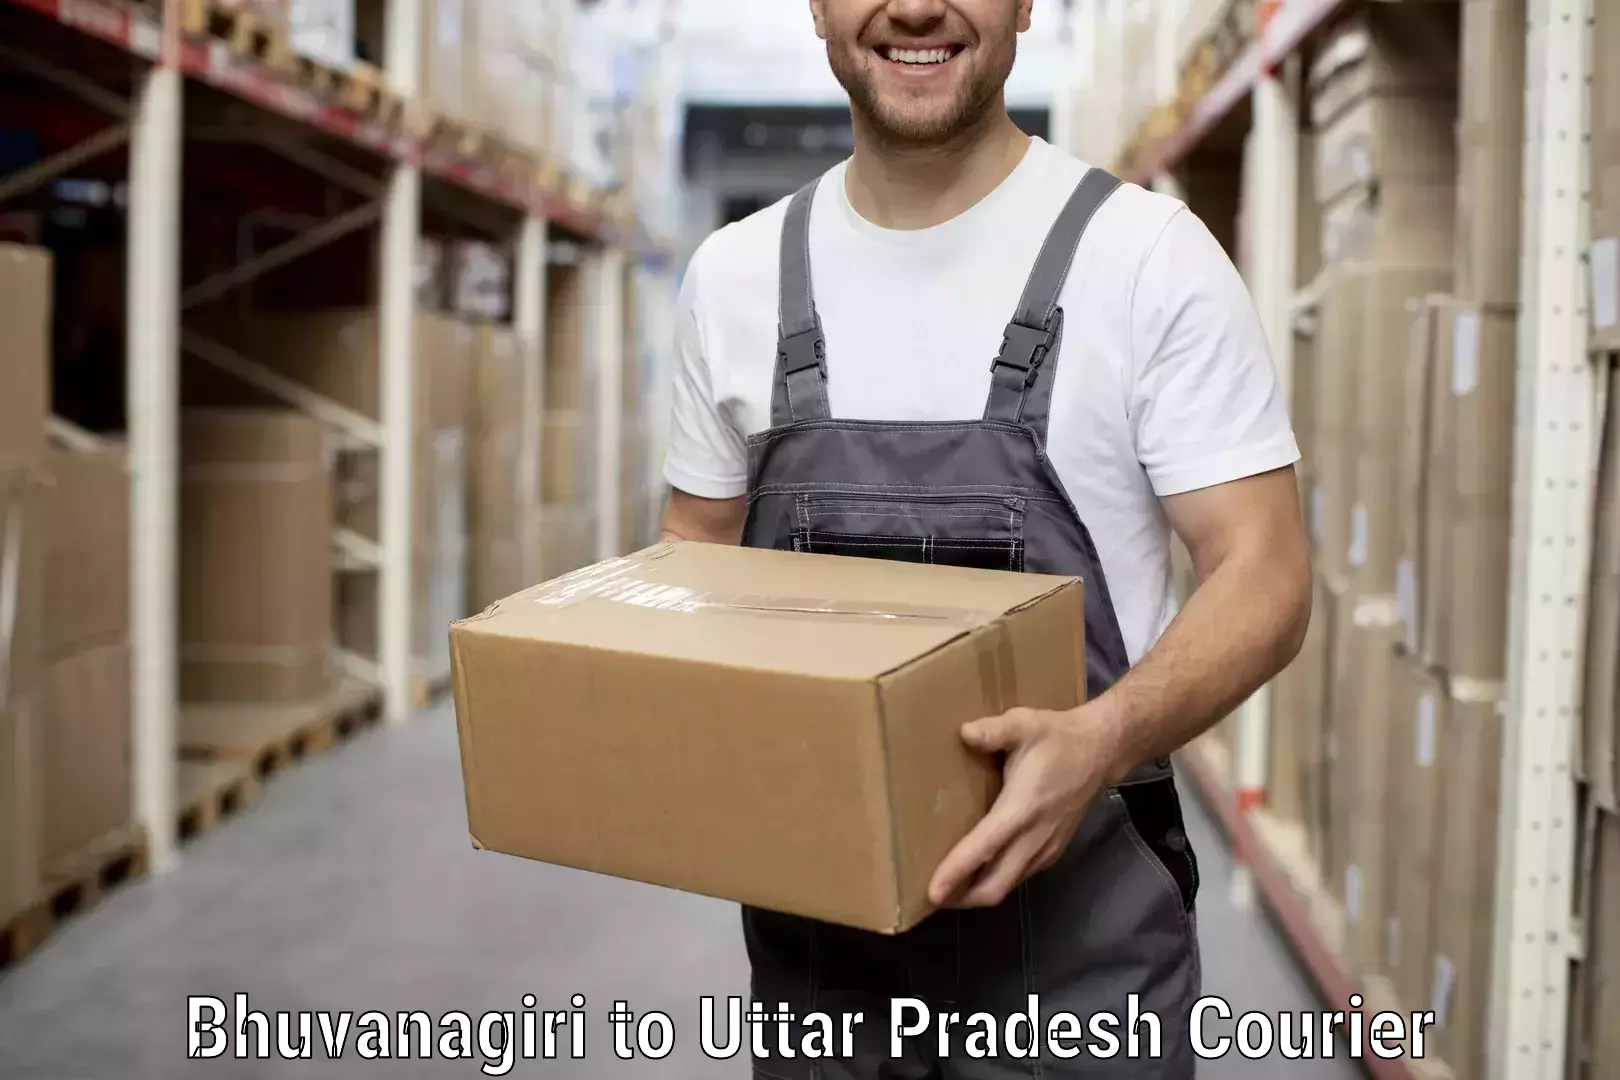 Trusted moving company Bhuvanagiri to Kheragarh